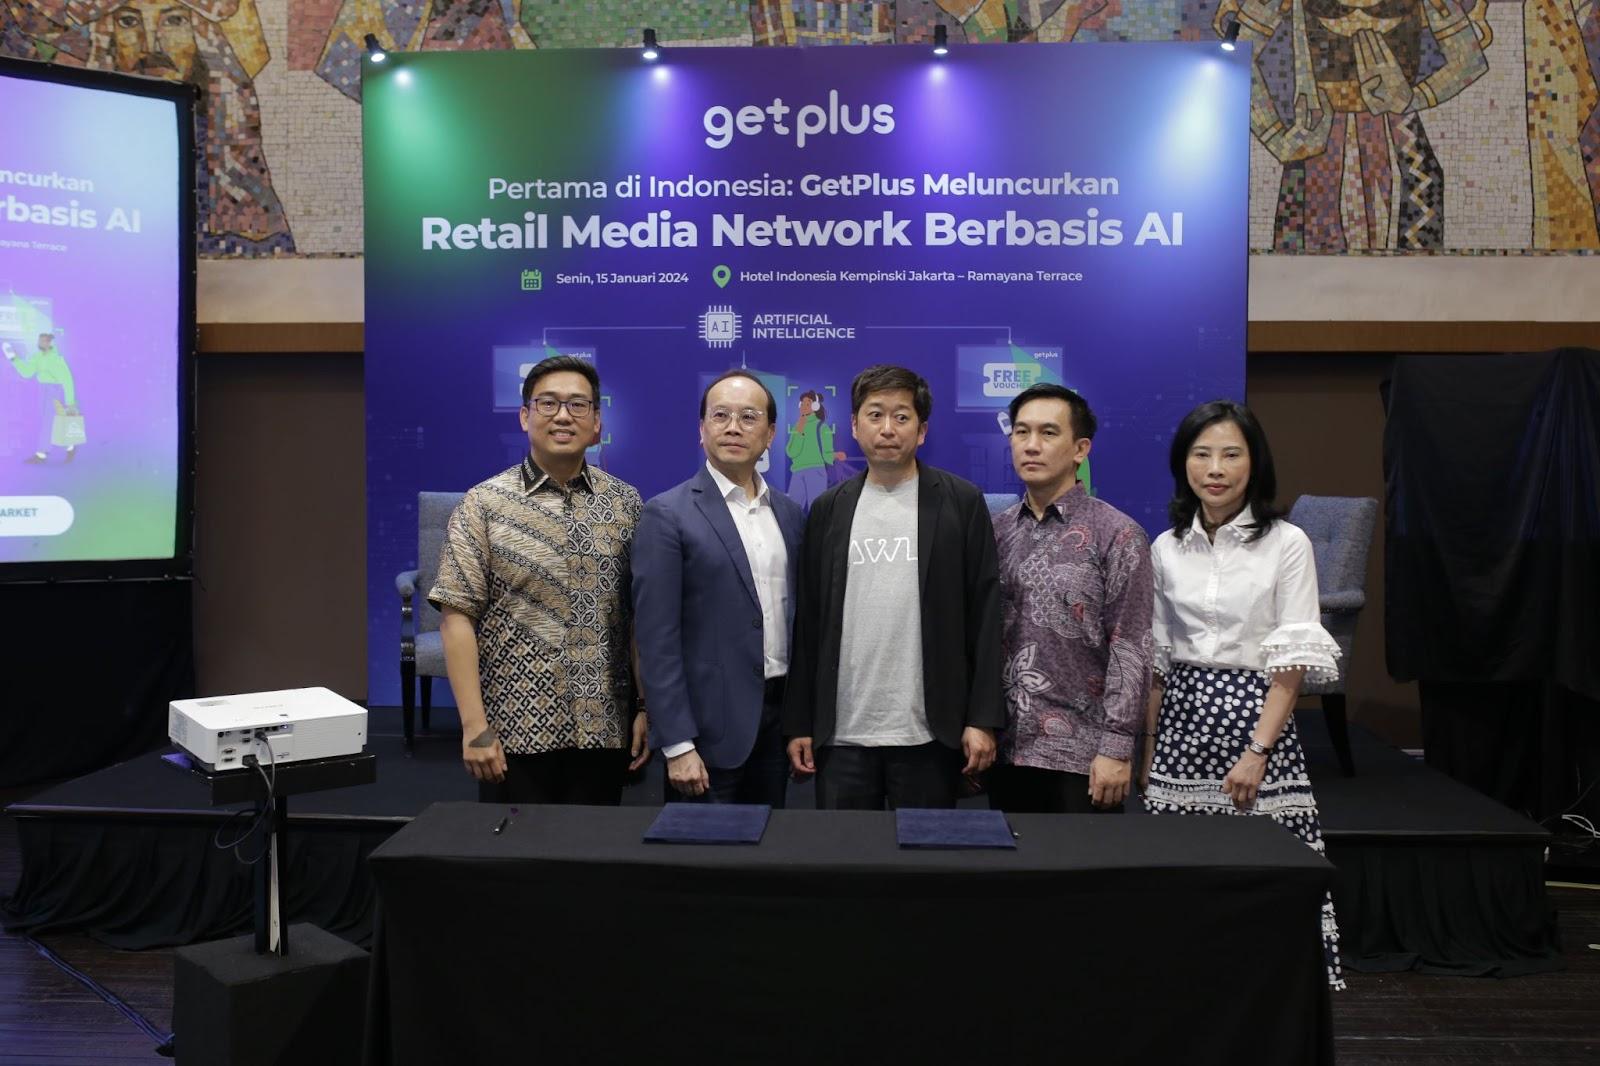 retail-media-network-berbasi-ai-pertama-di-indonesia-diinisiasi-oleh-getplus